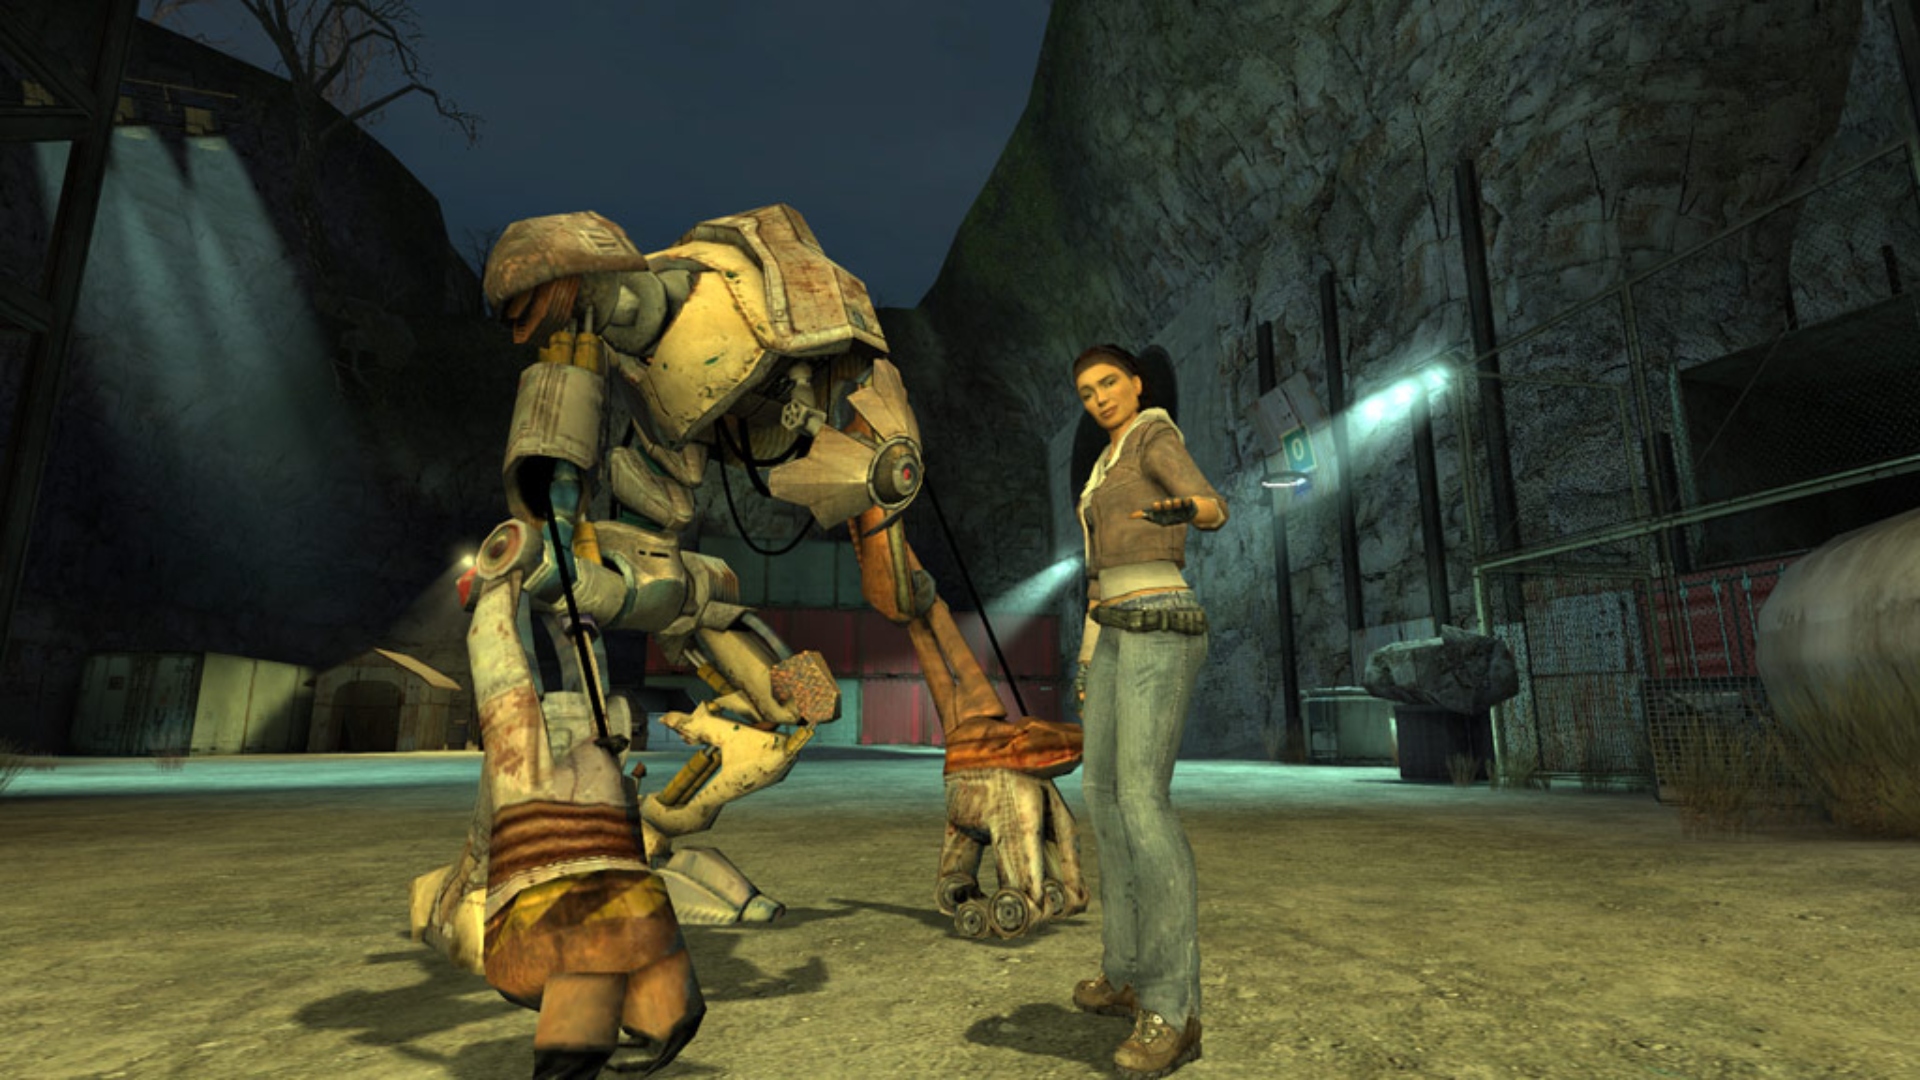 Halflife roman: een jonge vrouw, Alyx Vance, staat naast een gigantische robot in Valve FPS-game Half-Life 2